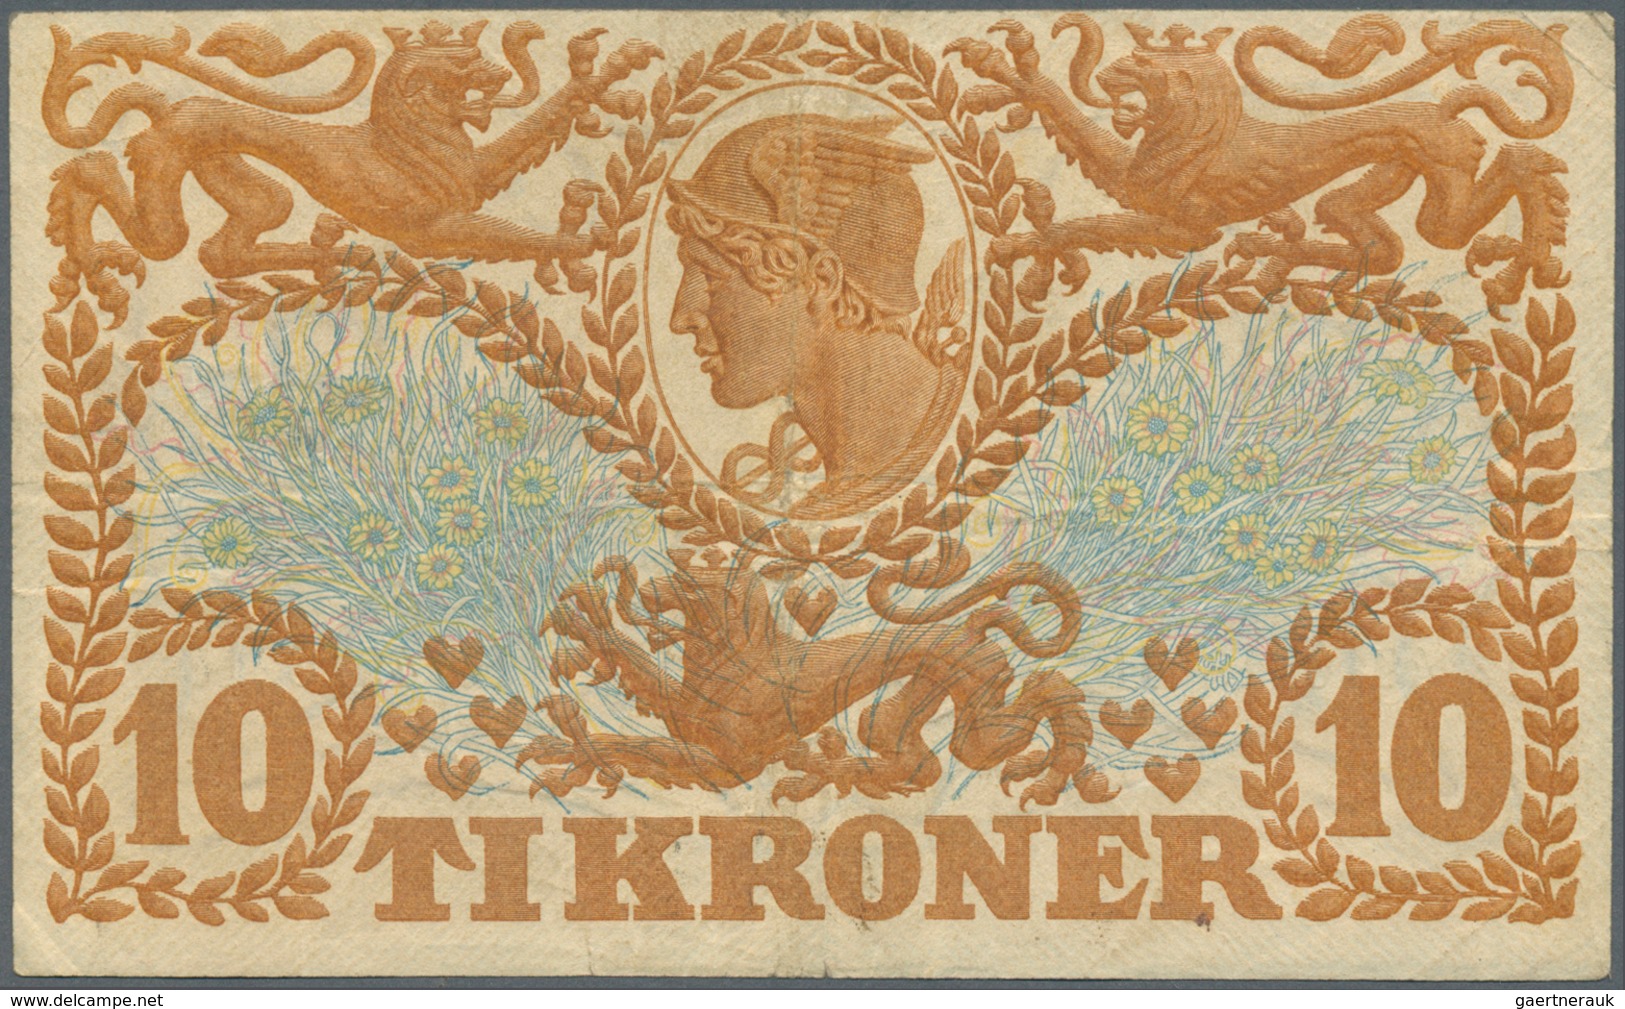 01352 Denmark  / Dänemark: 10 Kroner 1922 P. 21n, Rarer Early Date With Vertical And Horizontal Folds, No - Denmark